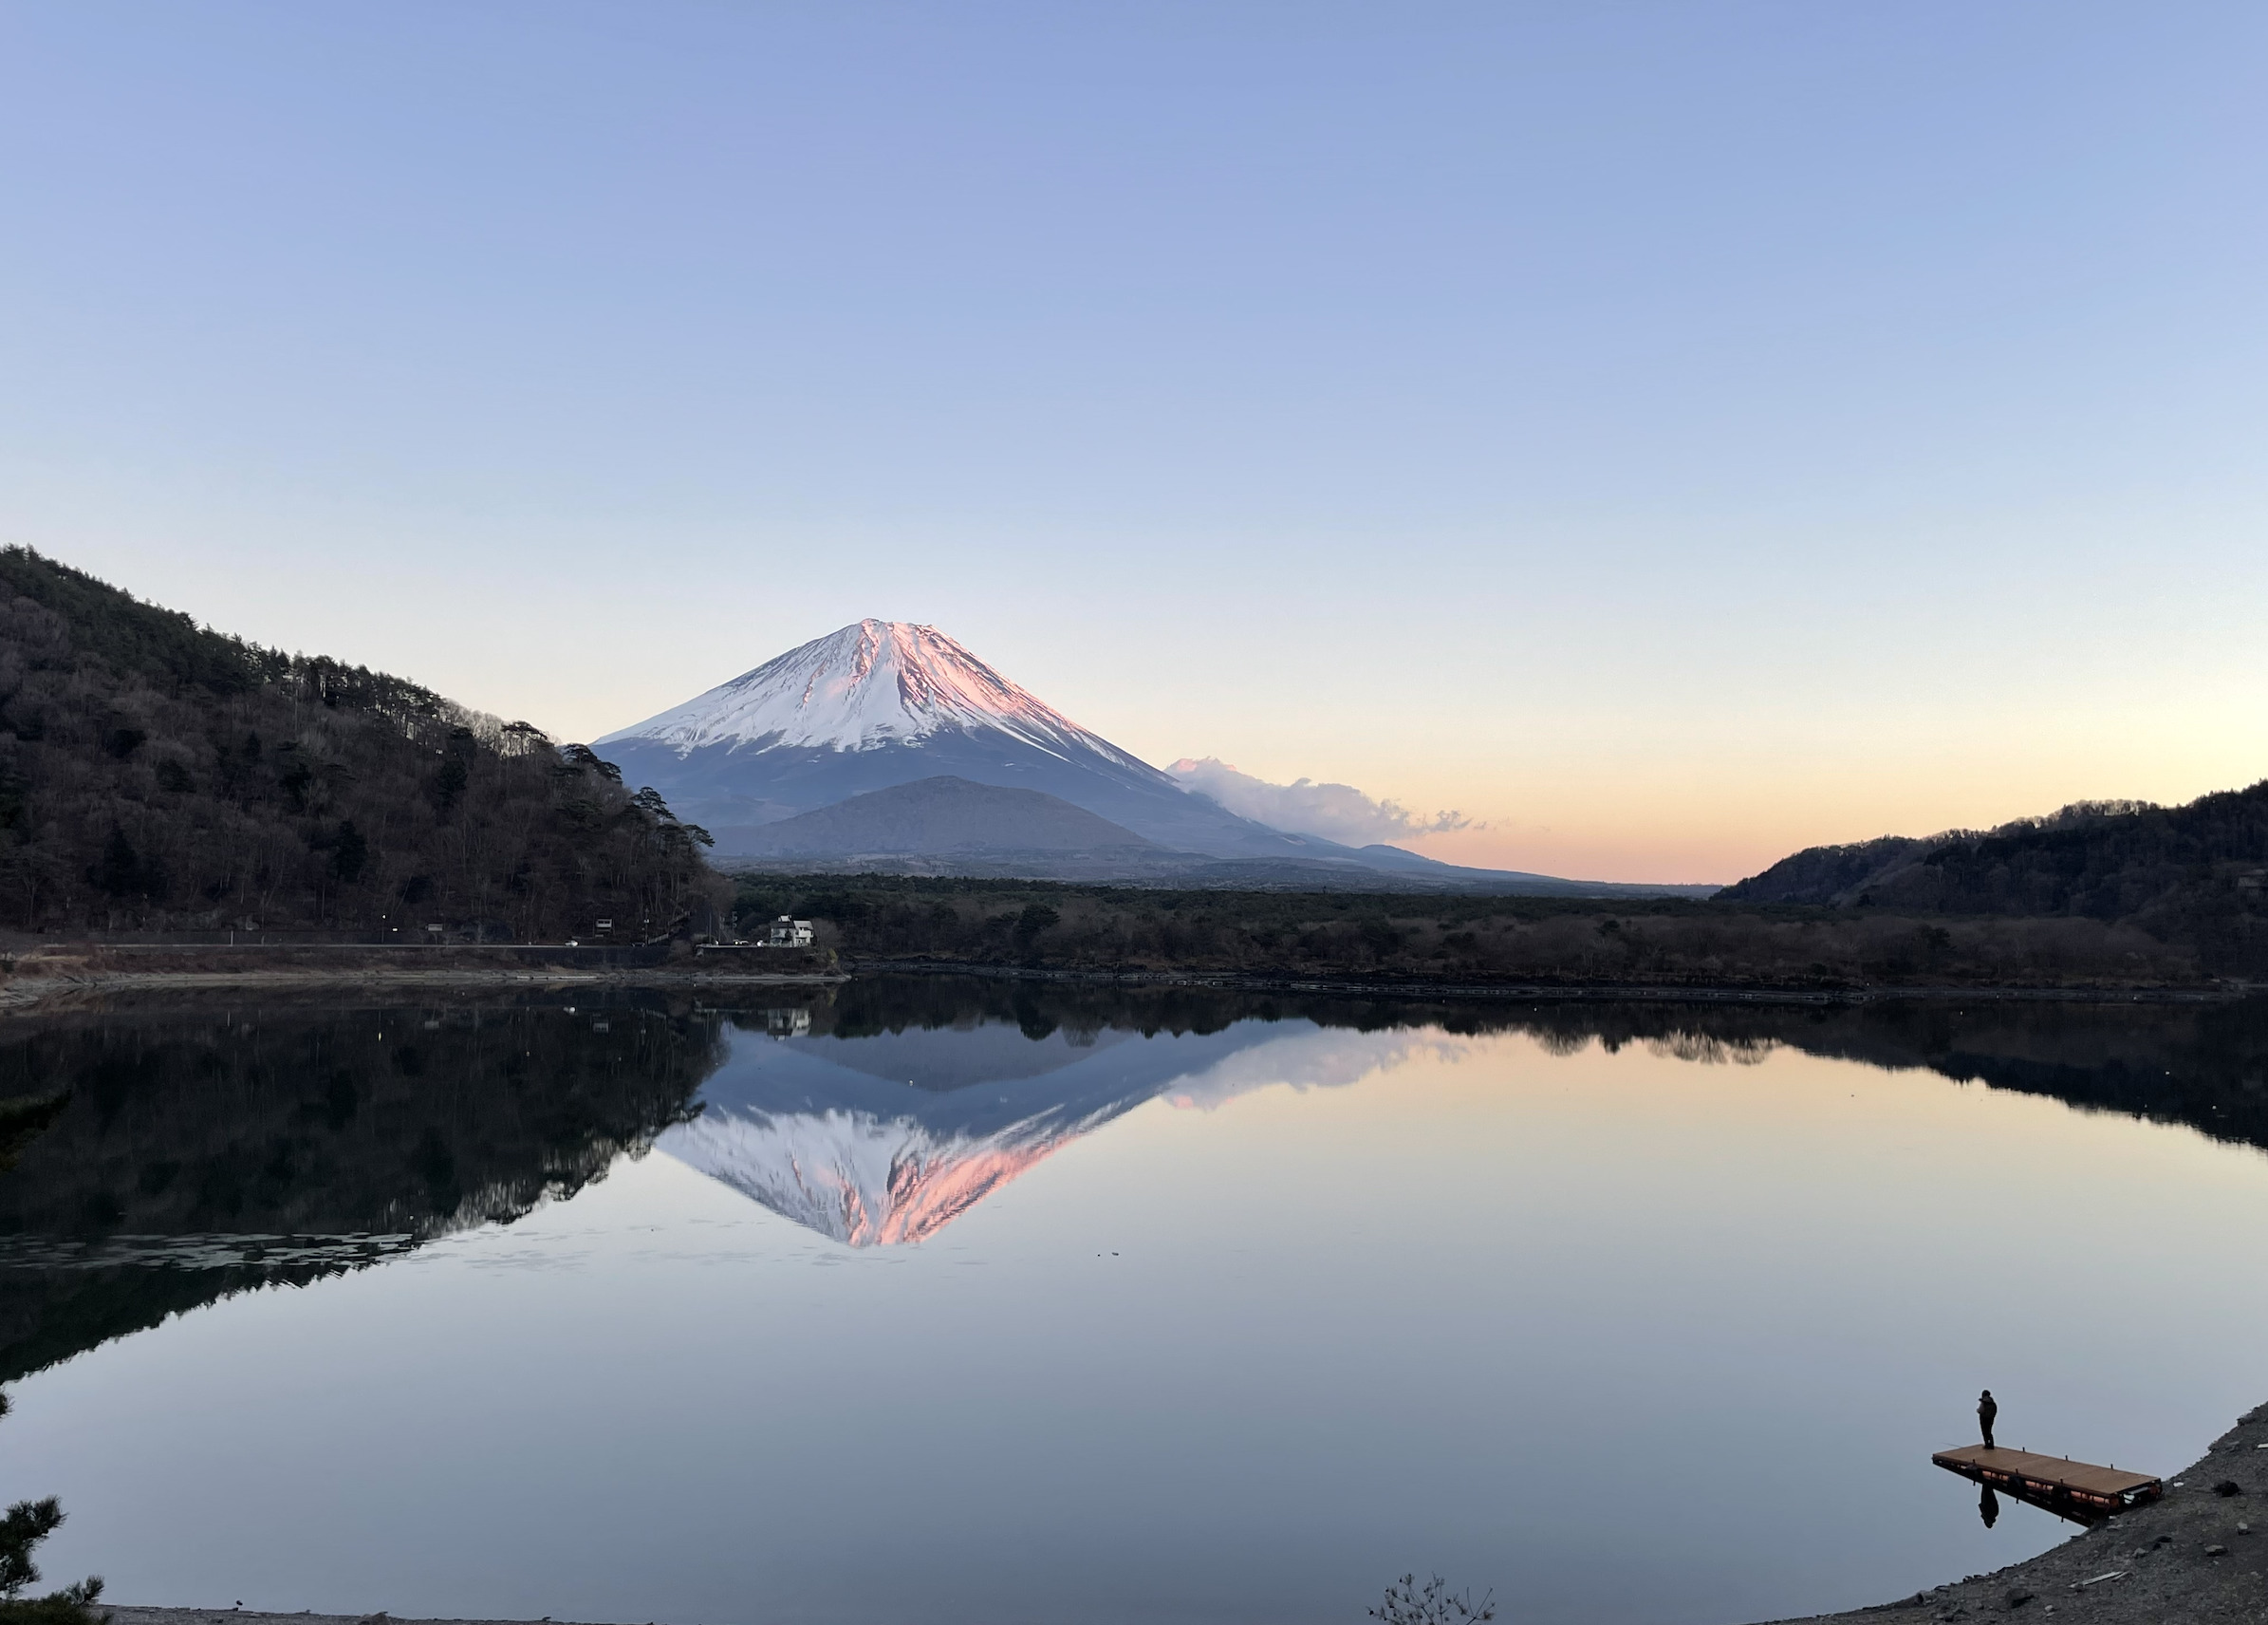 夕焼けに染まる富士山と、精進湖に映る逆さ富士